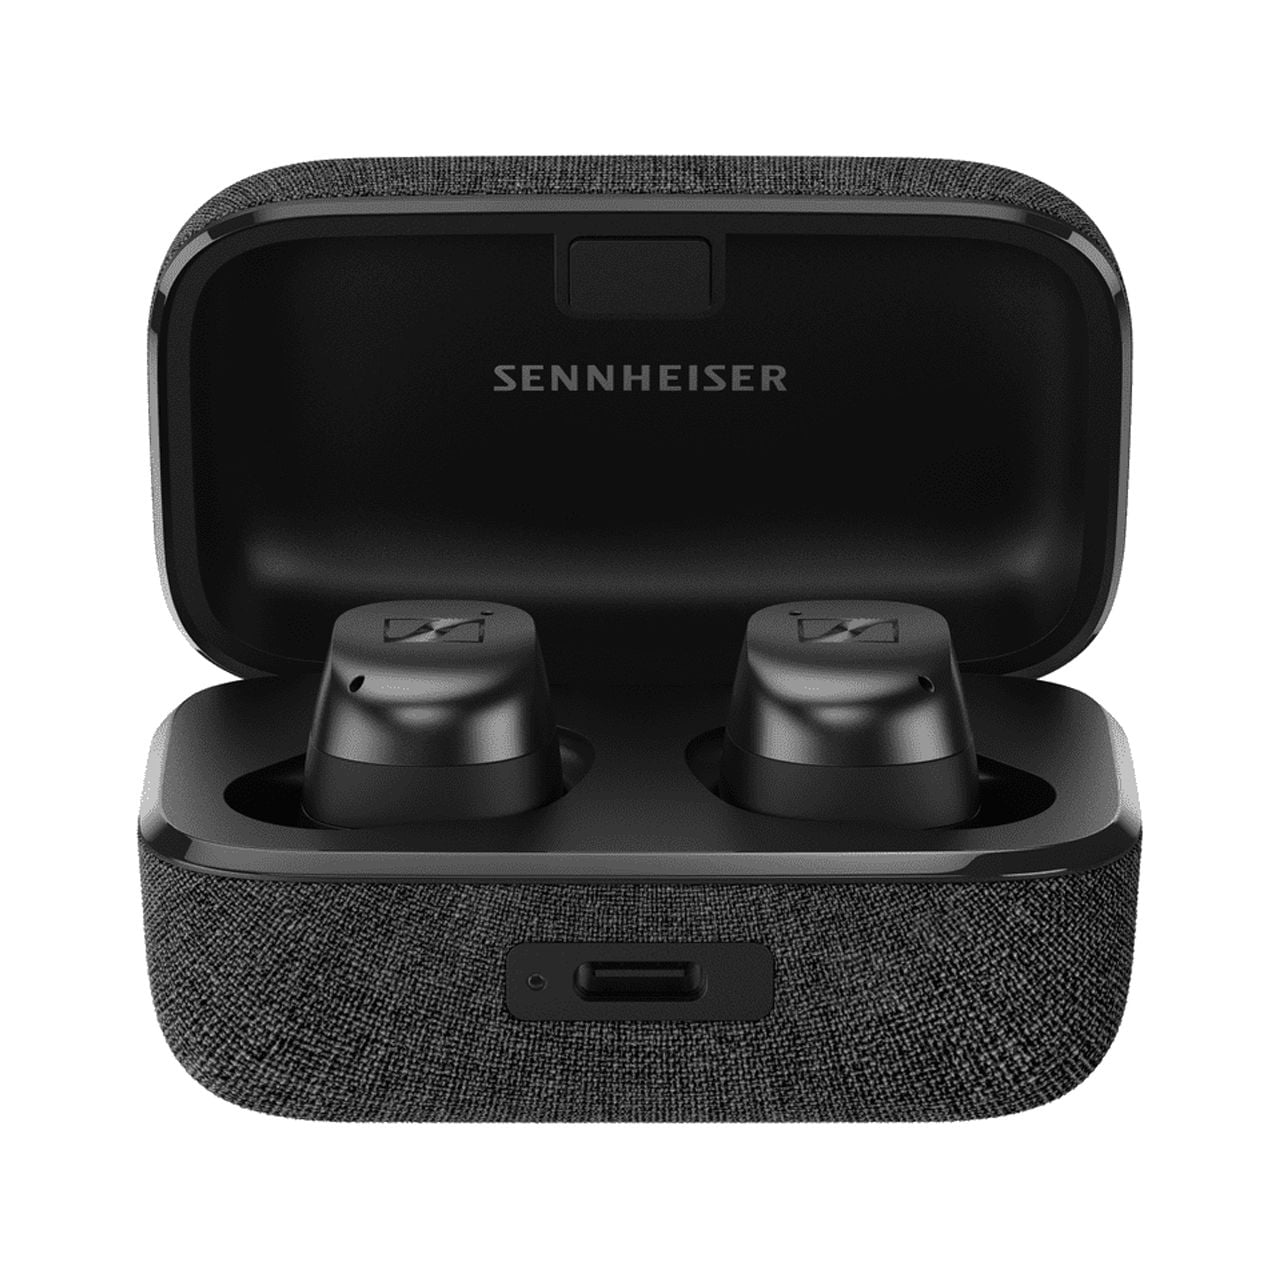 Sennheiser's latest Momentum 4 headphones and 3 earbuds on sale